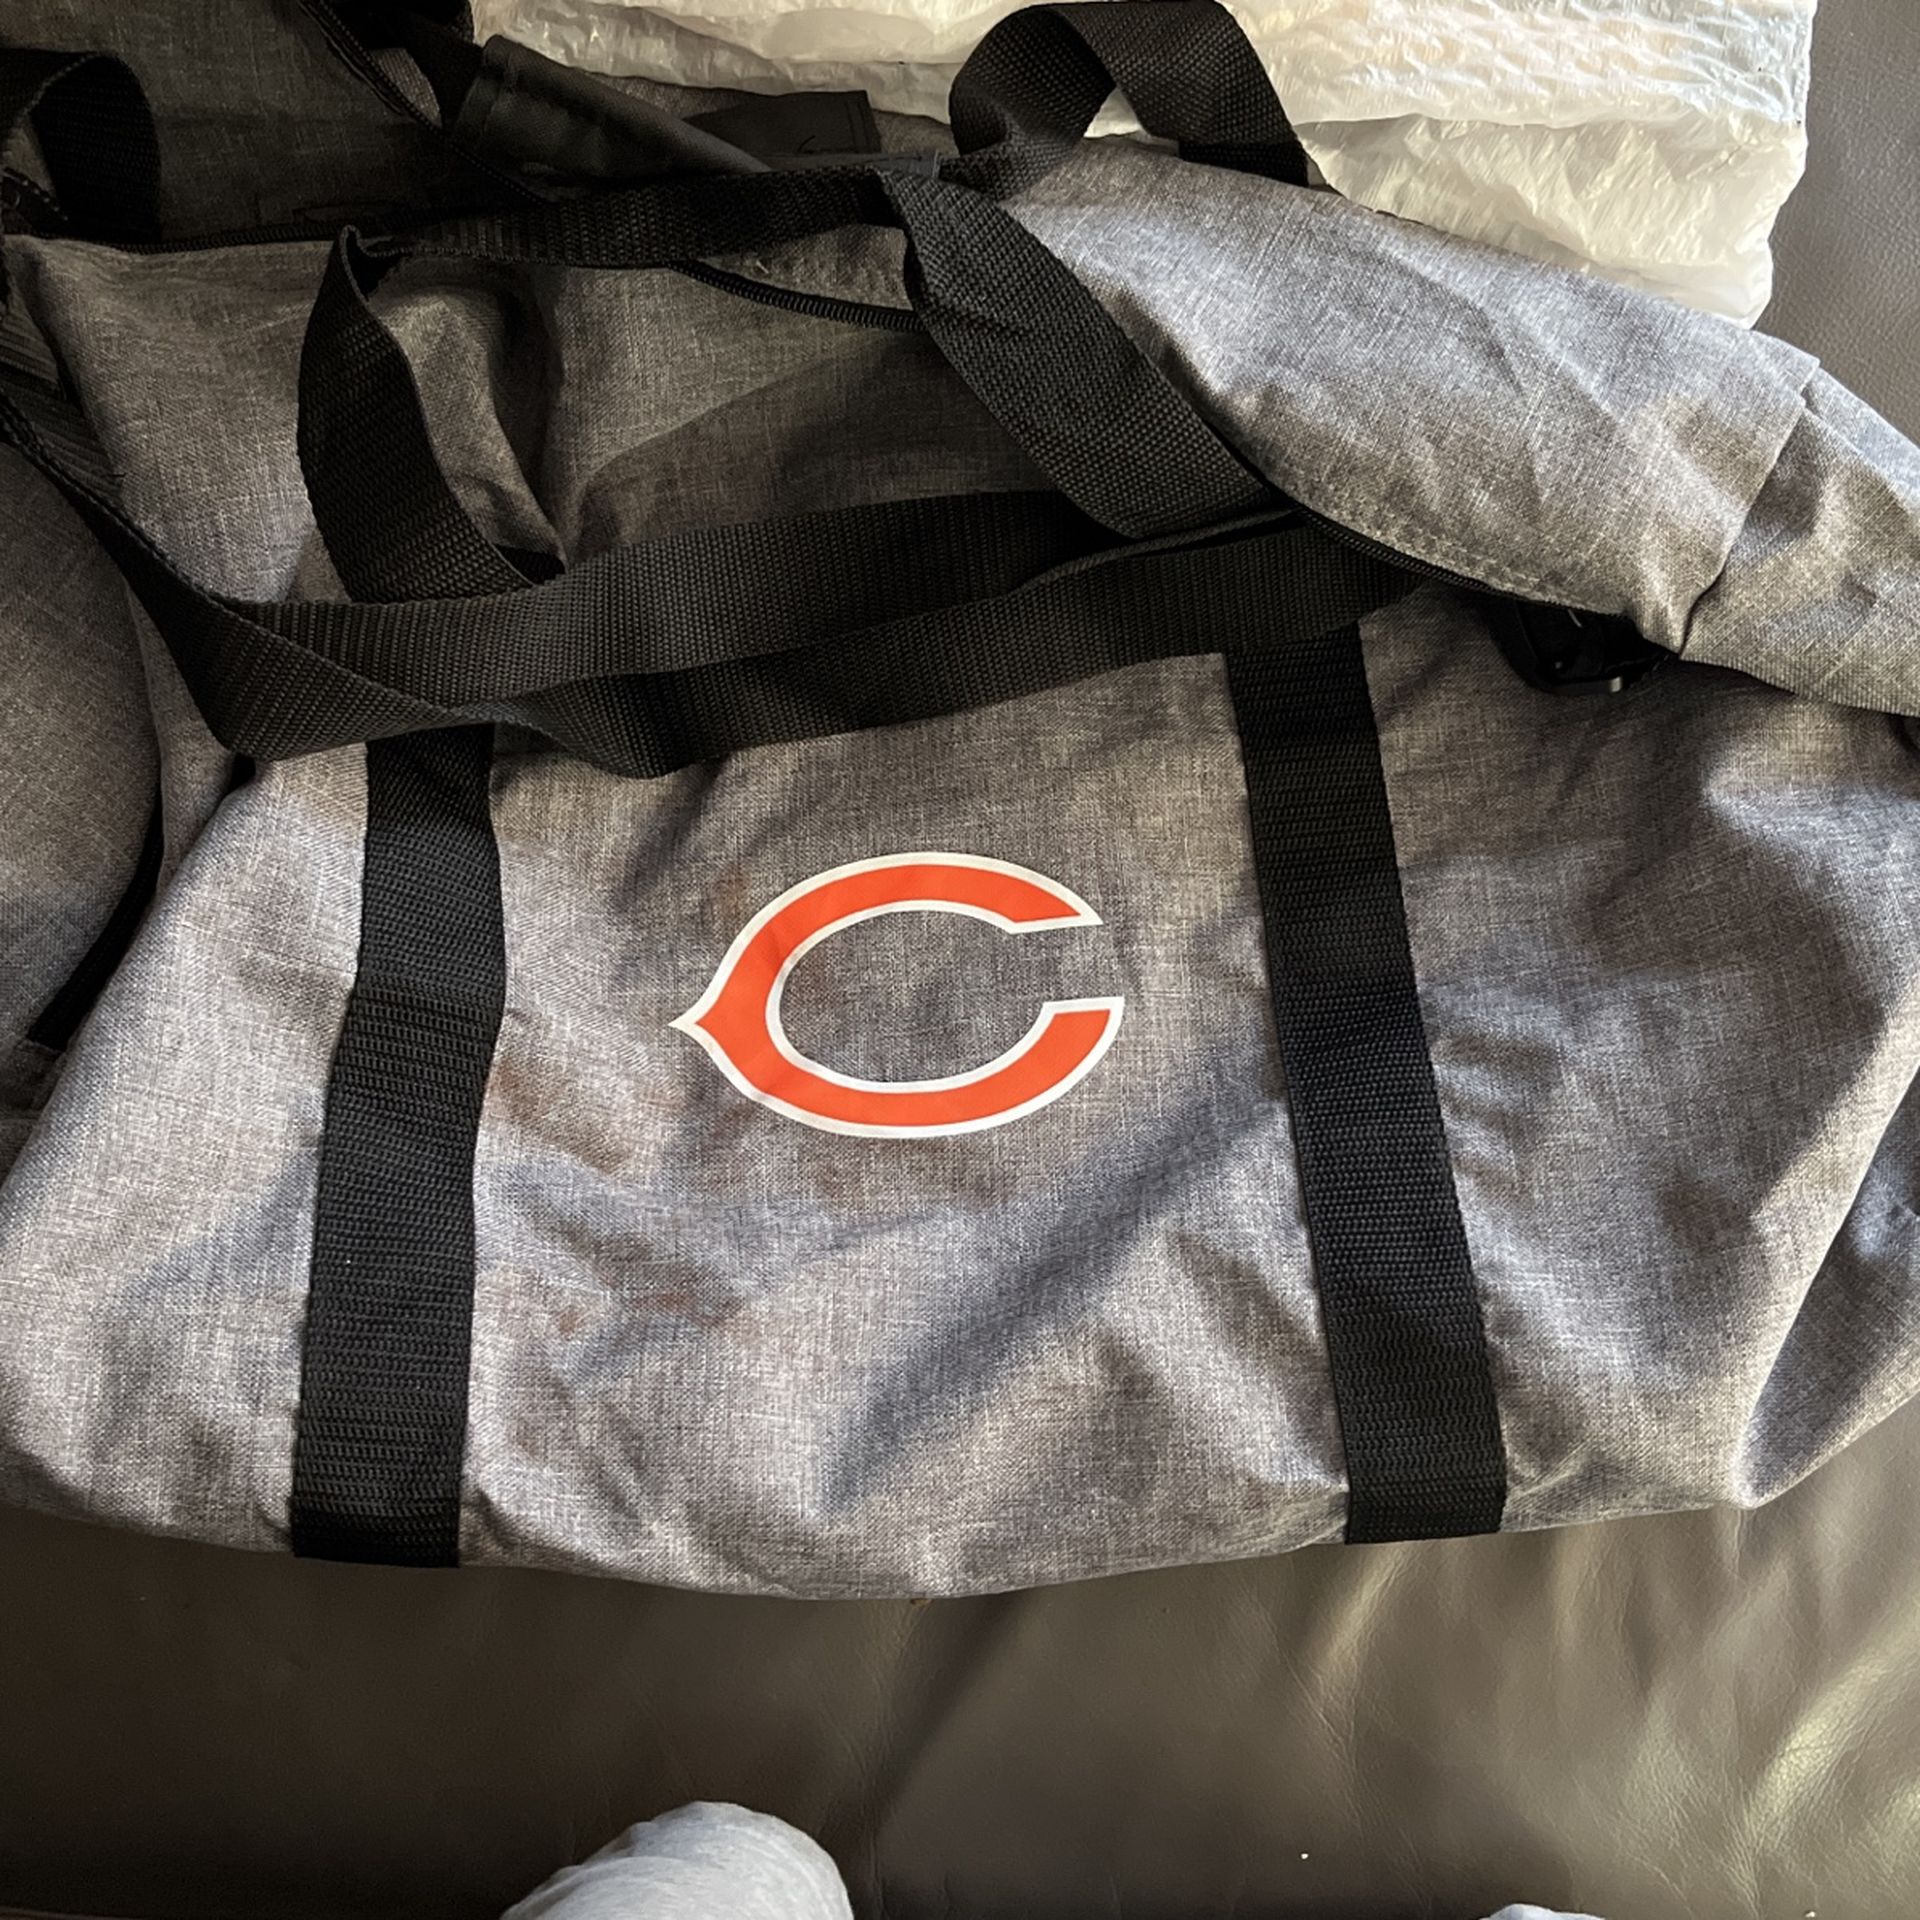 Bears Duffle Bag